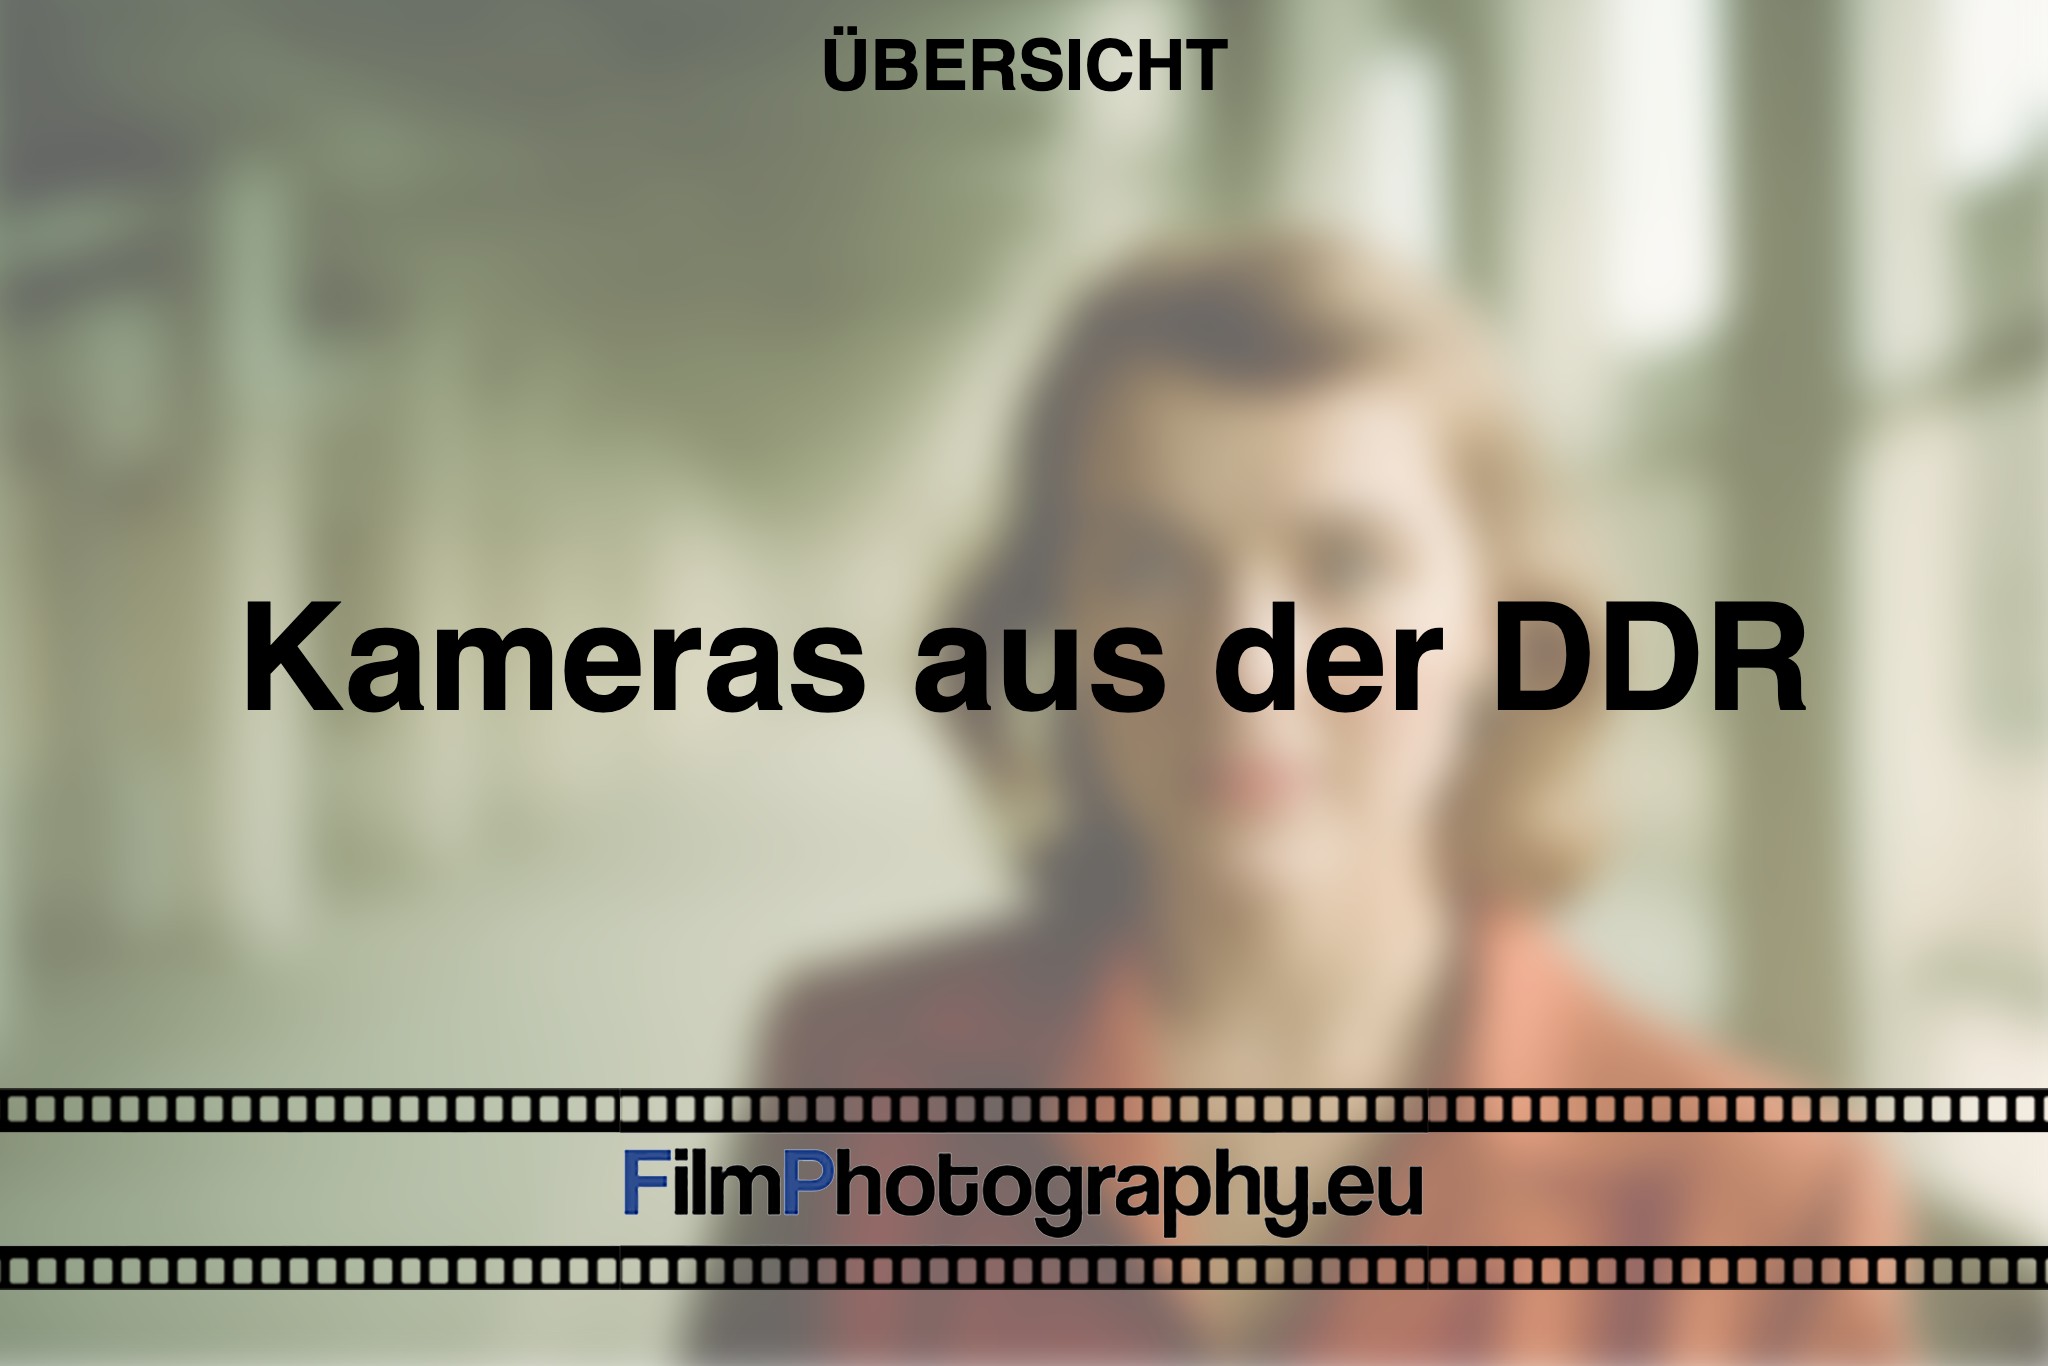 kameras-aus-DDR-produktion-foto-bnv